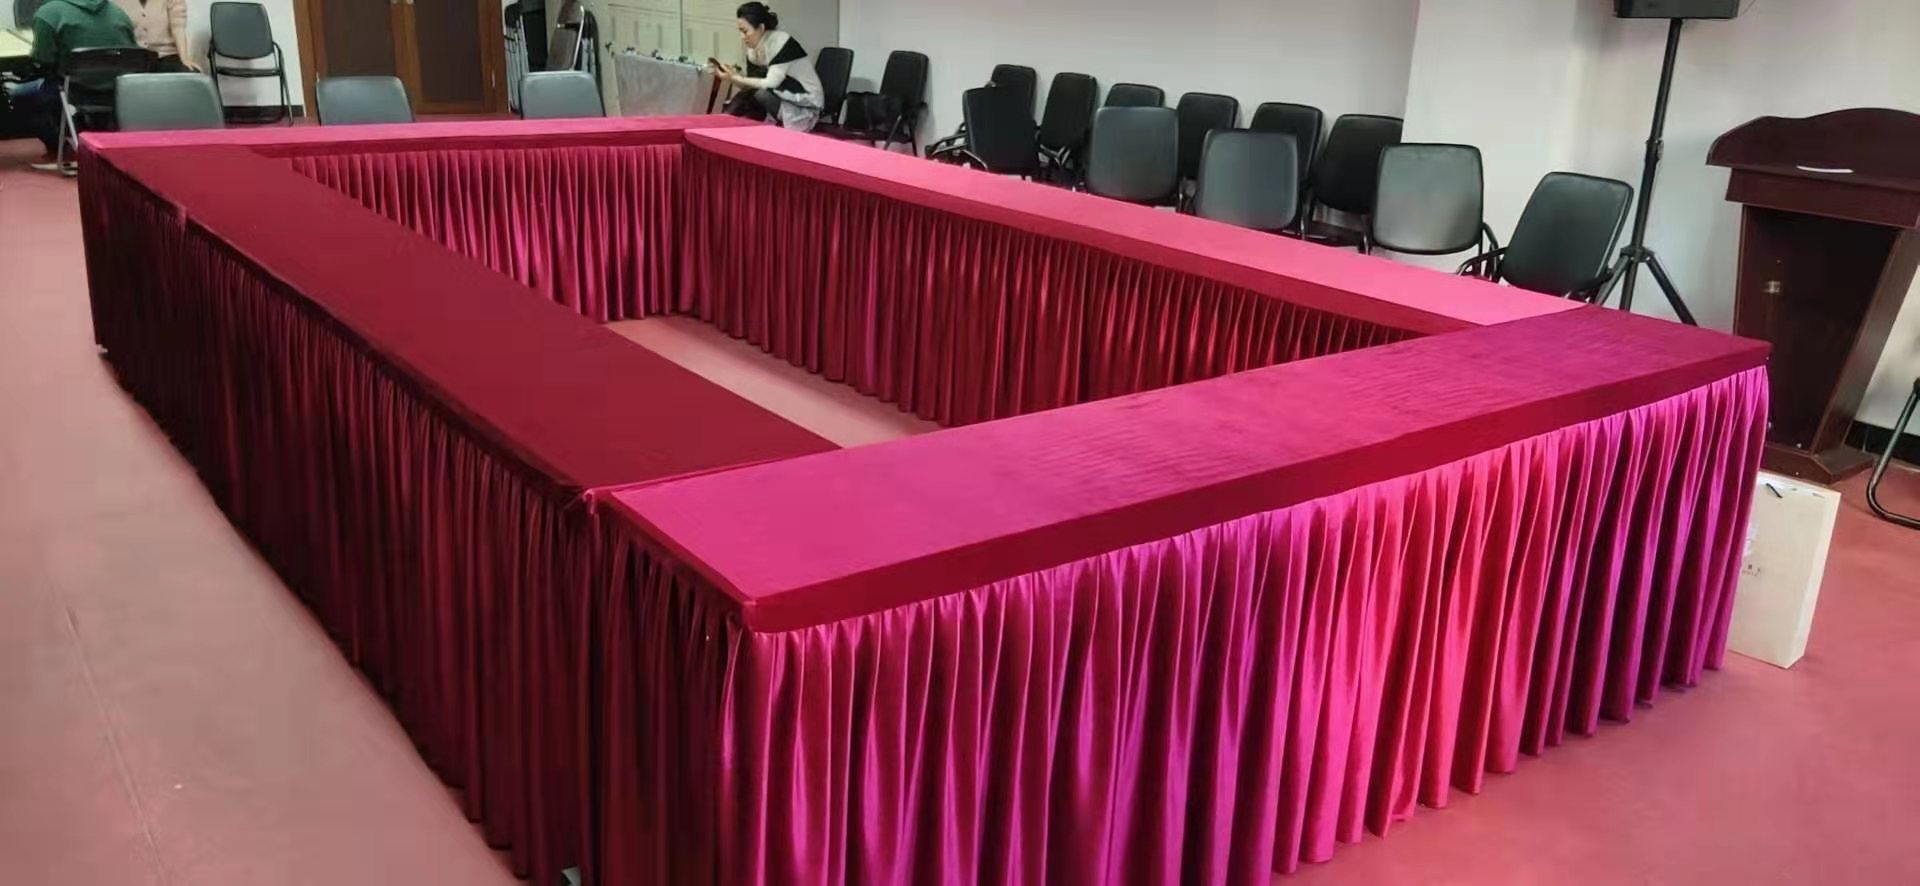 北京评剧院会议室桌布定制安装